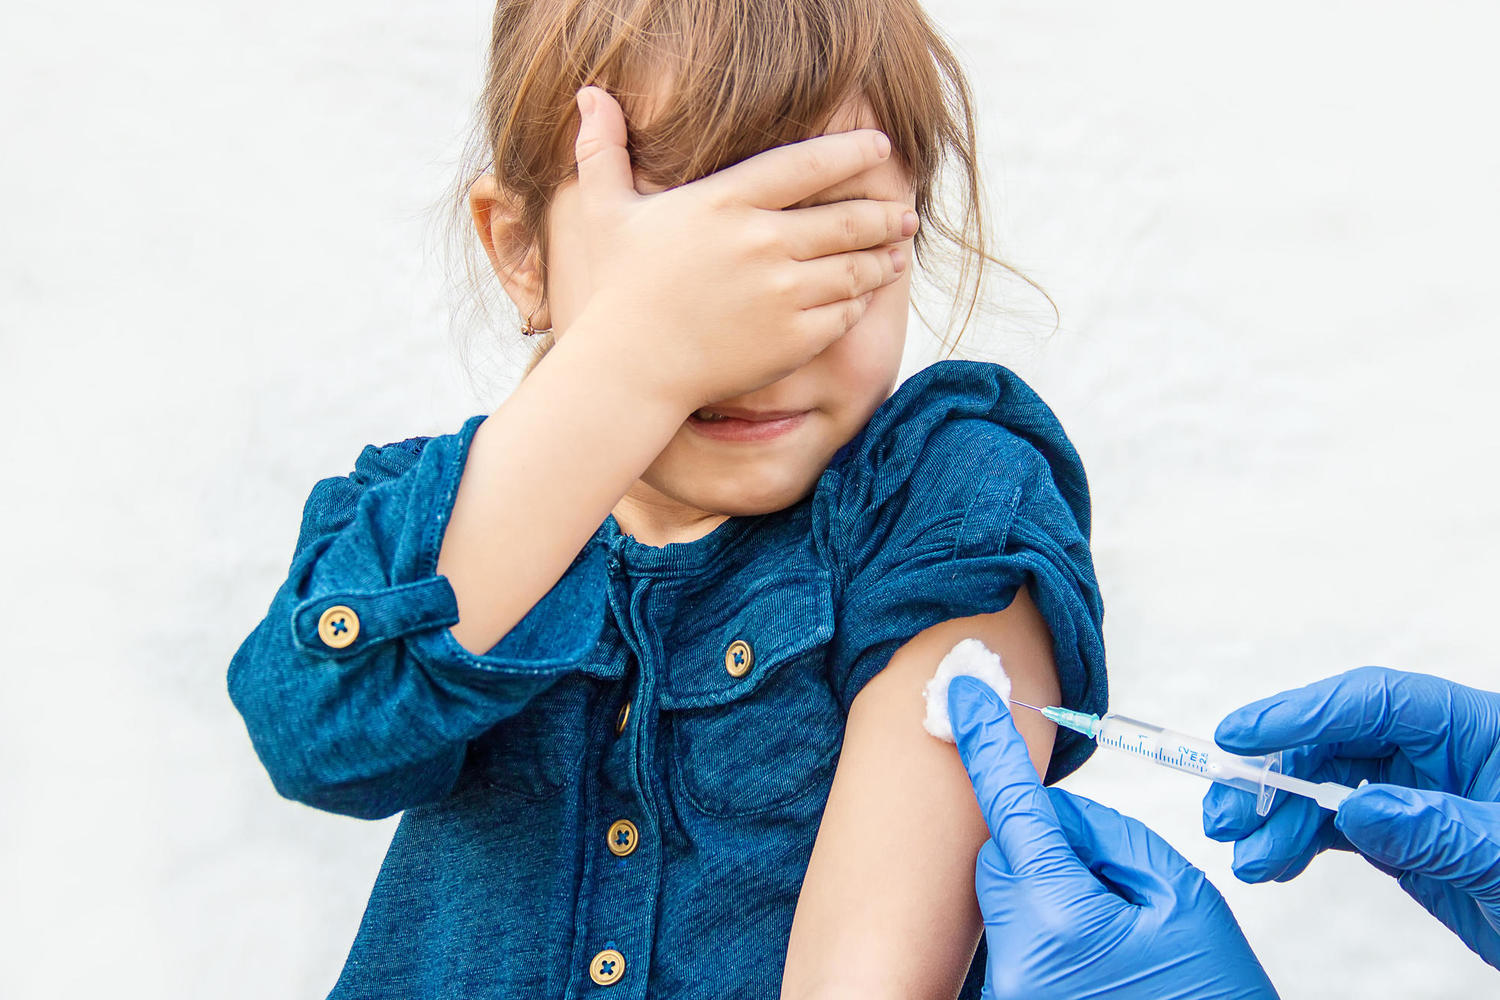 Moderna и Pfizer удваивают число участников испытаний вакцины в возрасте 5-11 лет